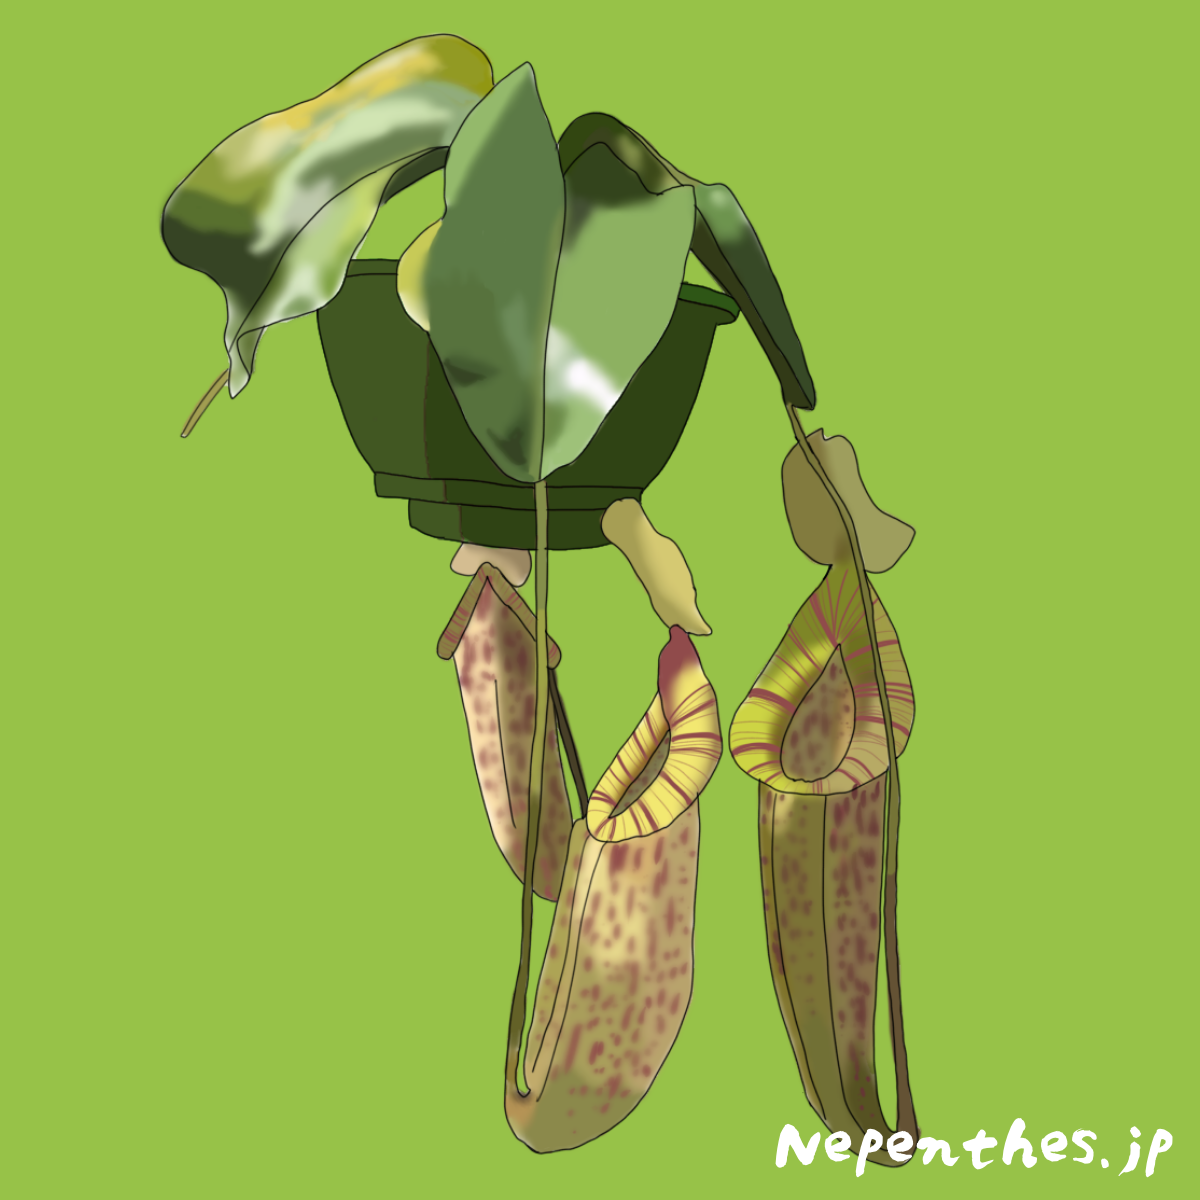 大きな捕食袋を付けるネペンテス ダイエリアーナ ダイエリアーナの基本情報から特徴や育て方 おススメの栽培方法までご紹介 ネペ吉のブログ